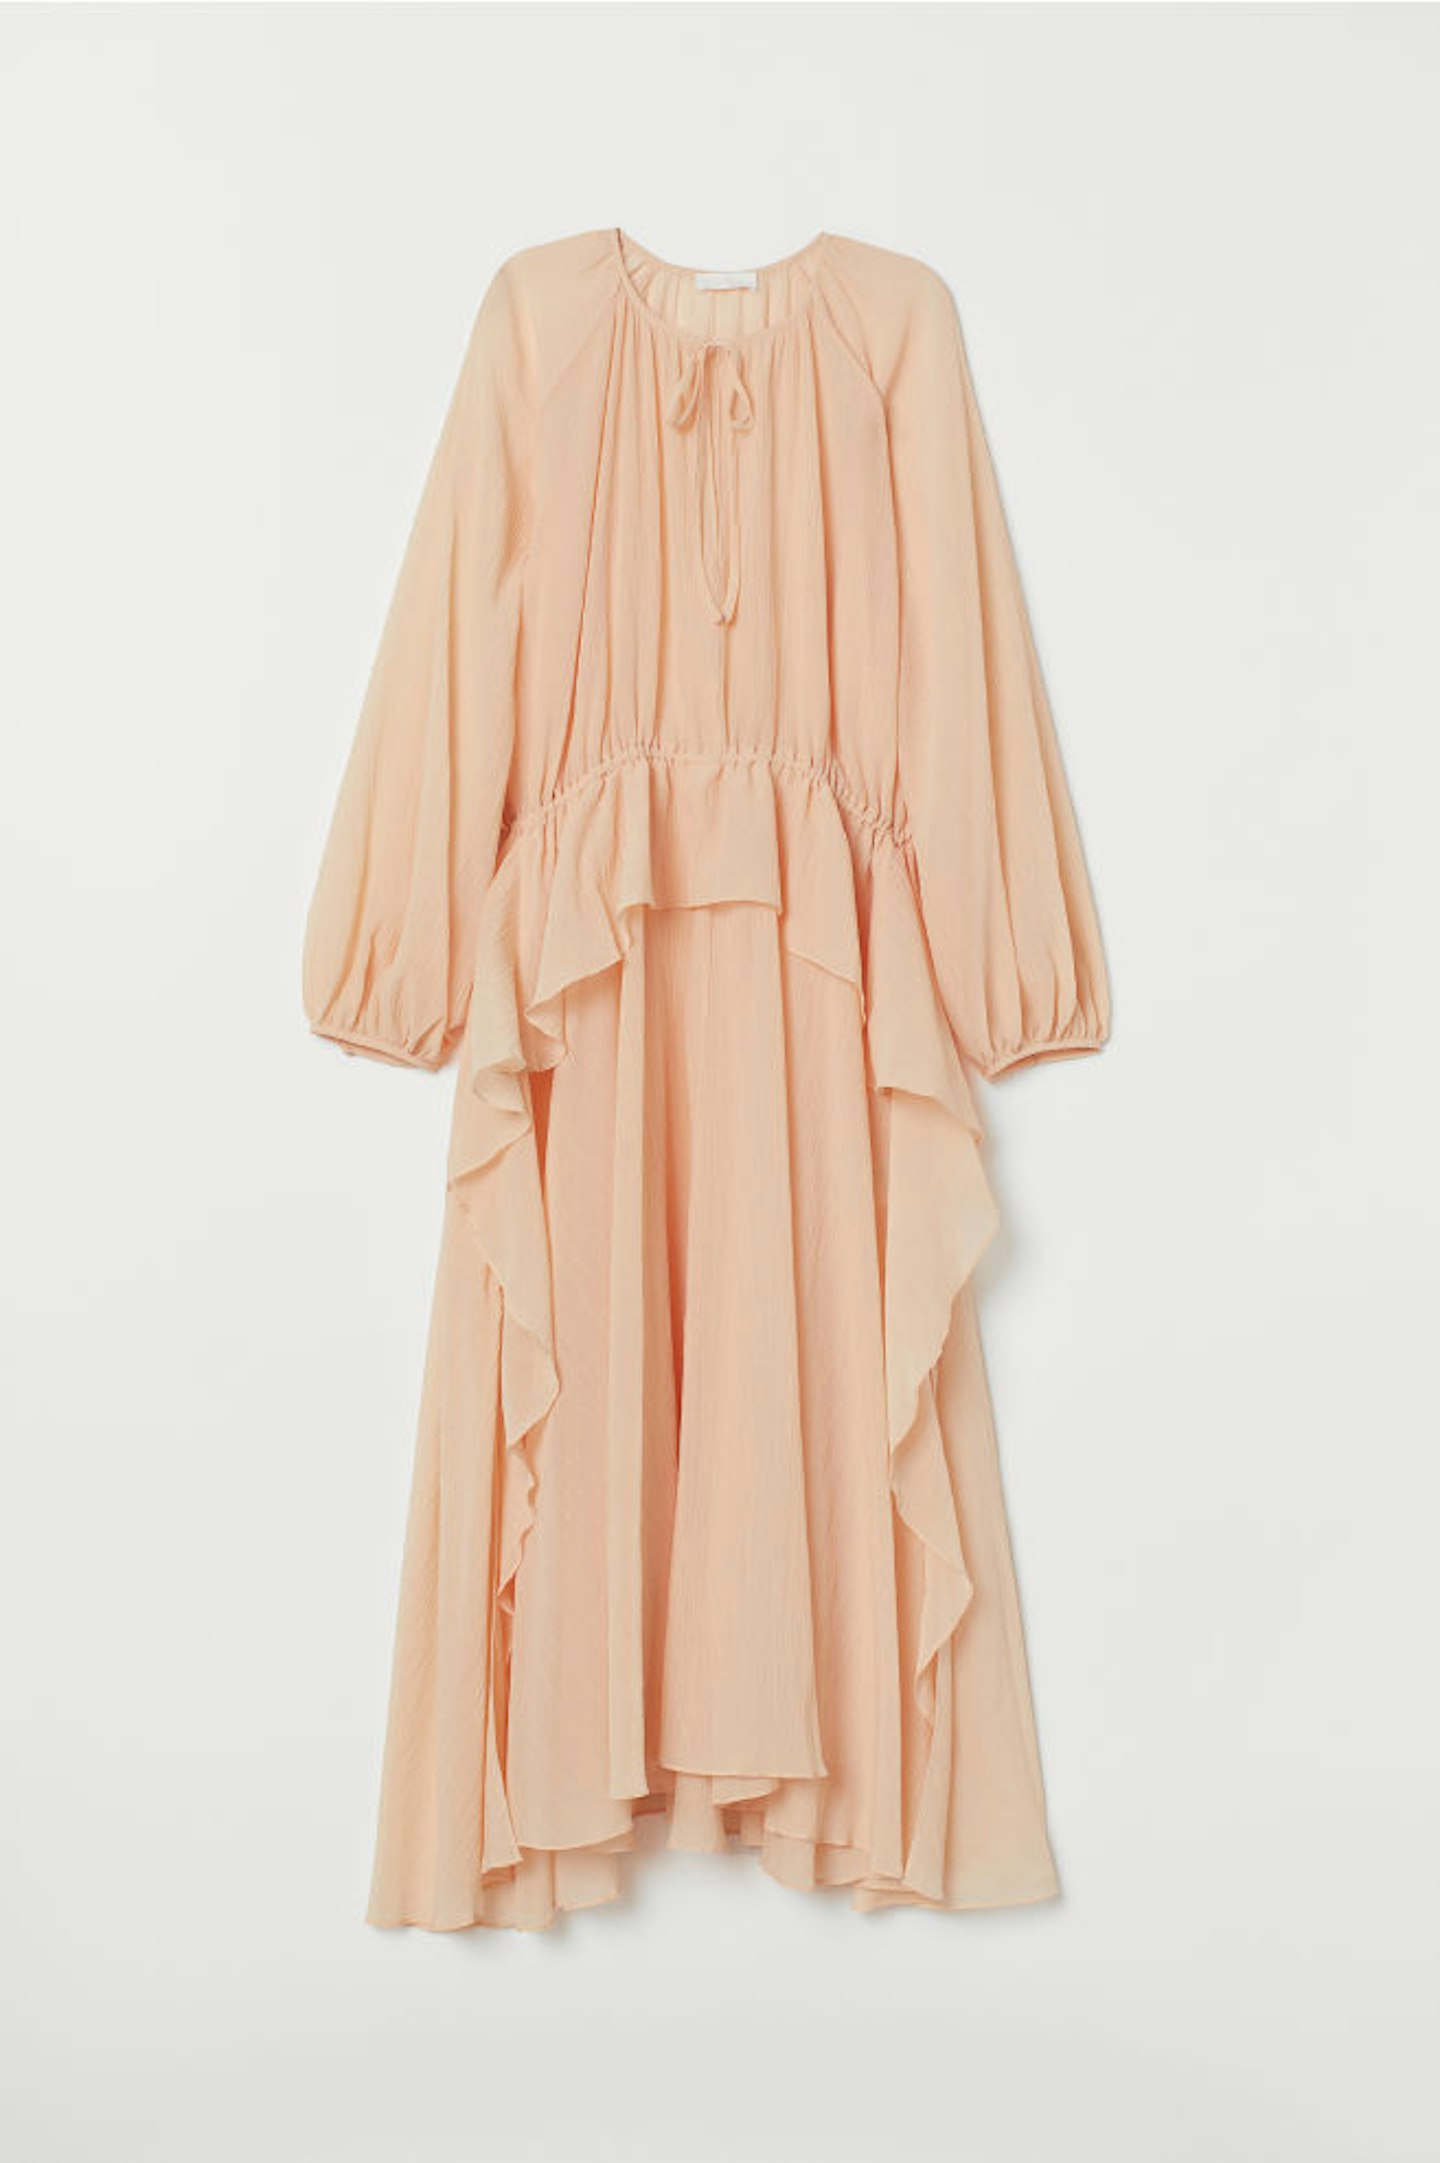 H&M, Silk-Blend Dress, £9.99